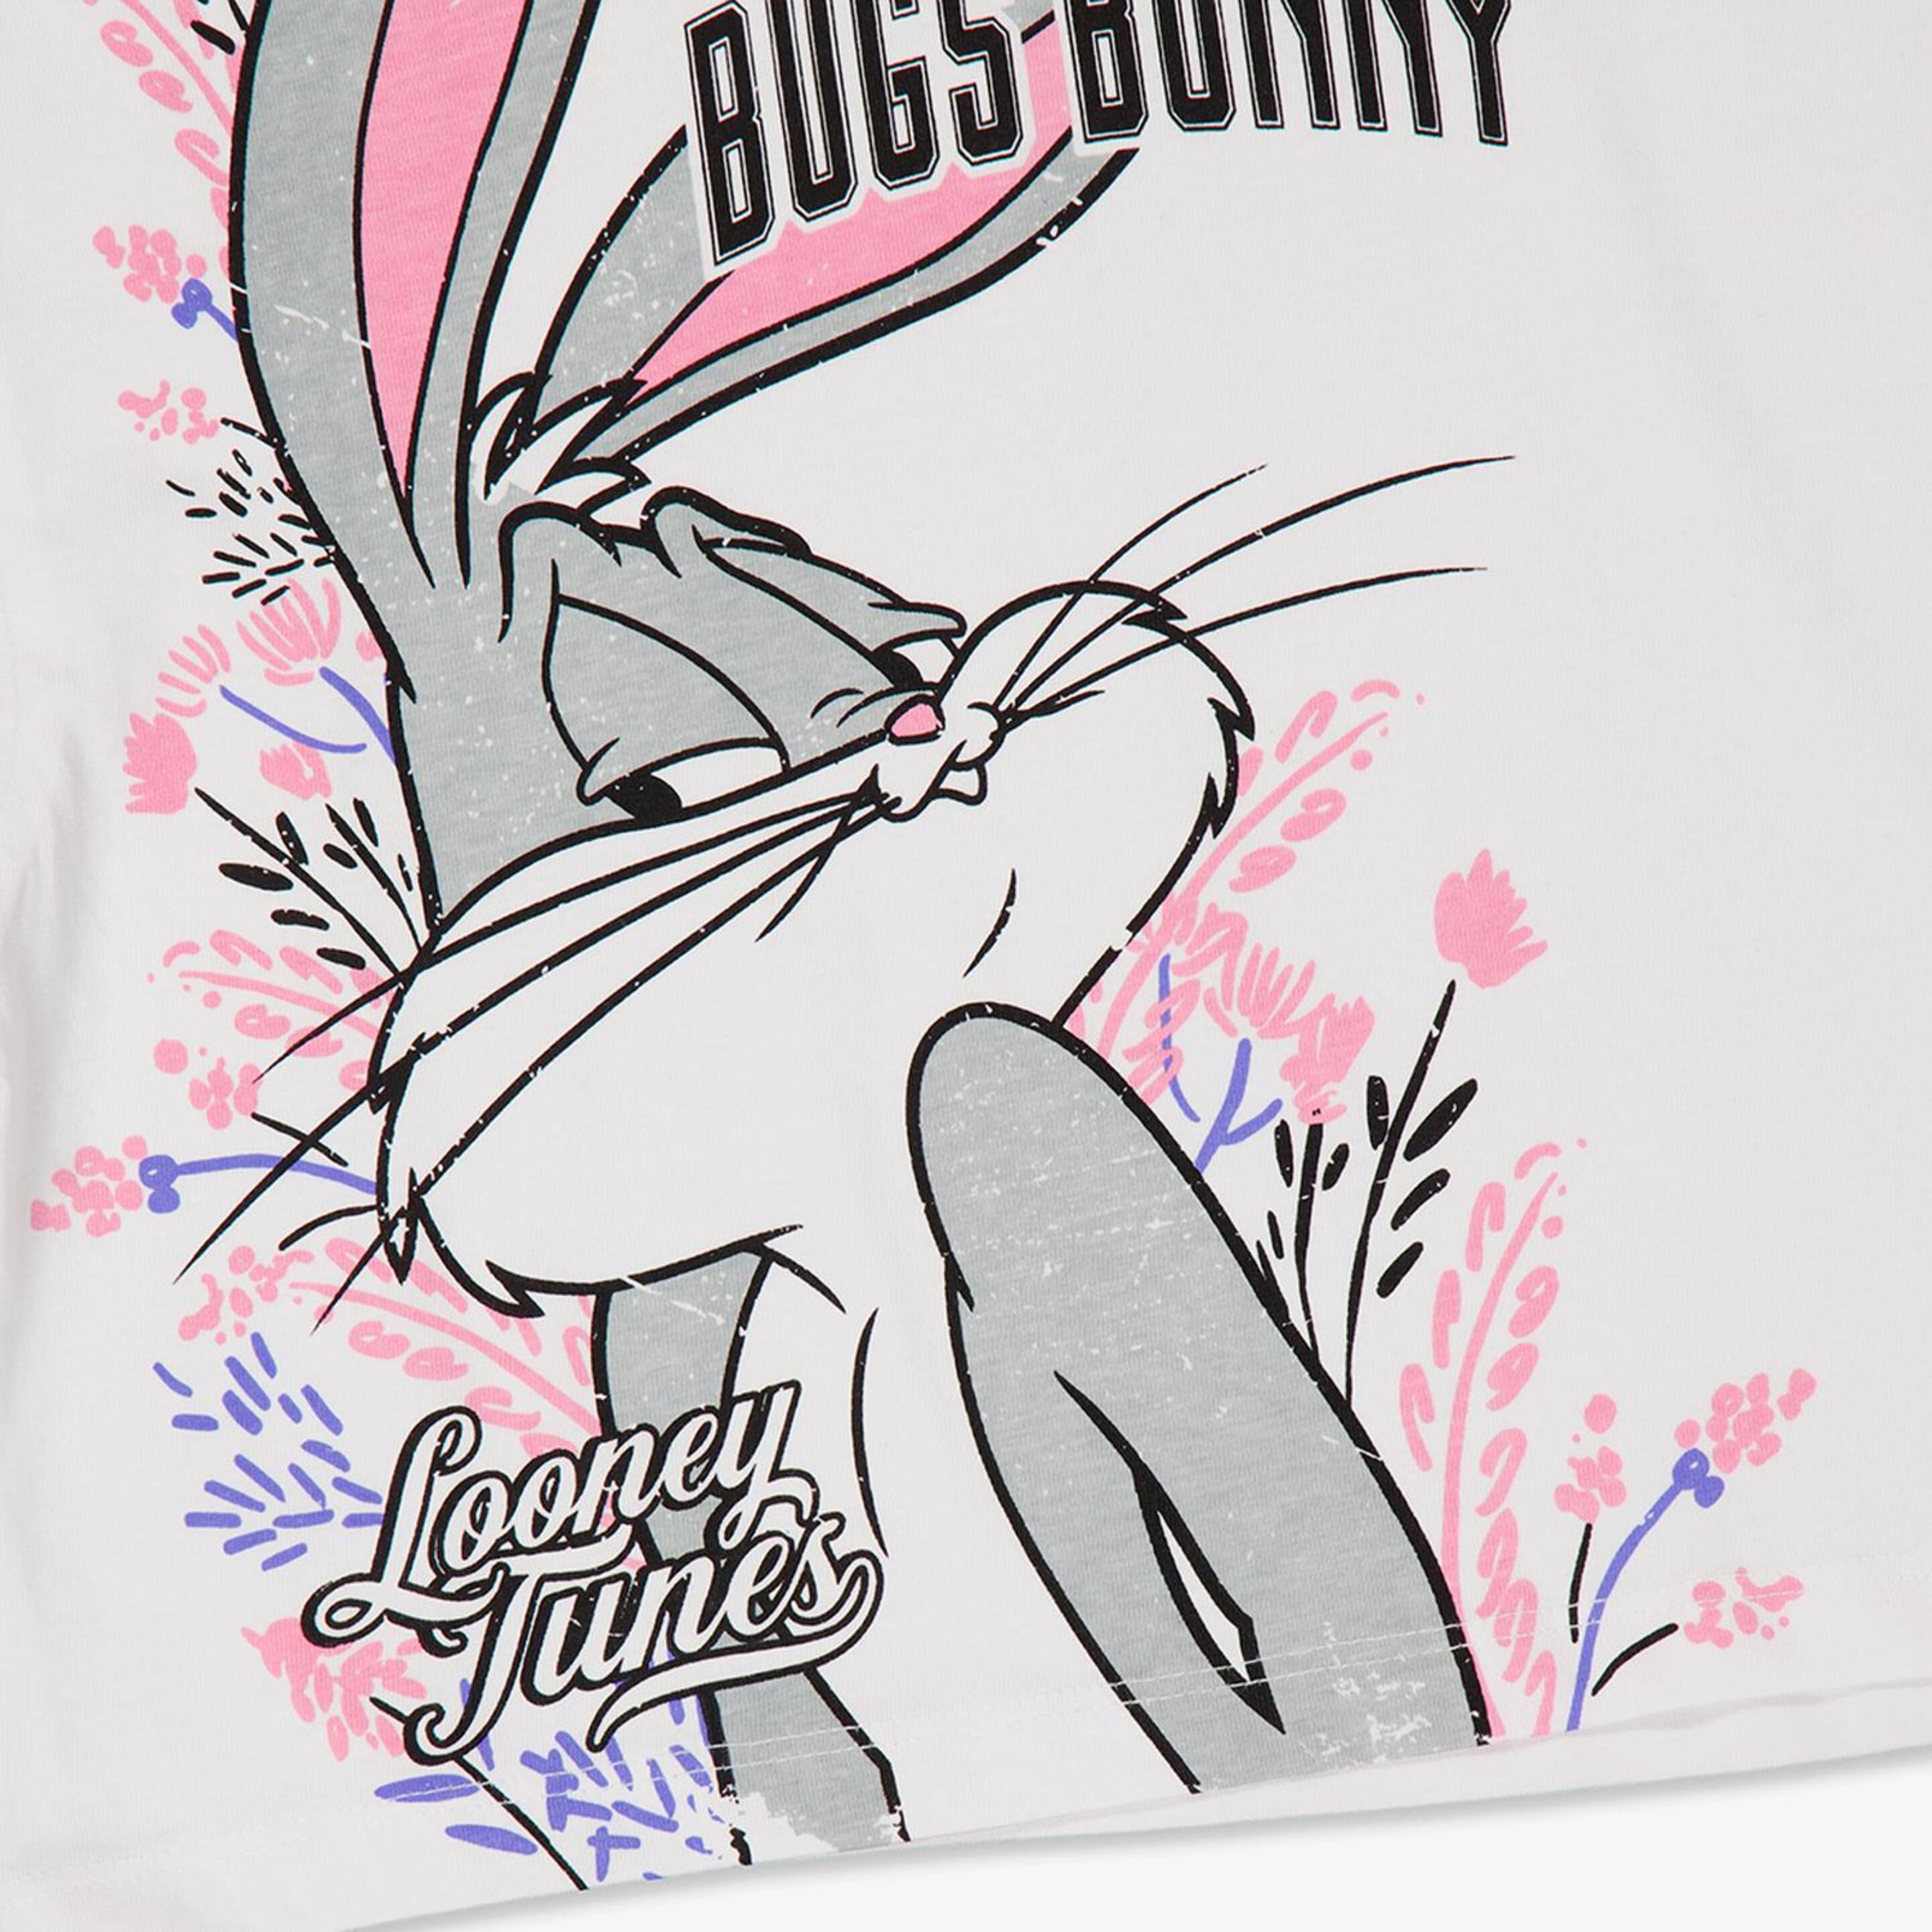 Camiseta Bugs Bunny